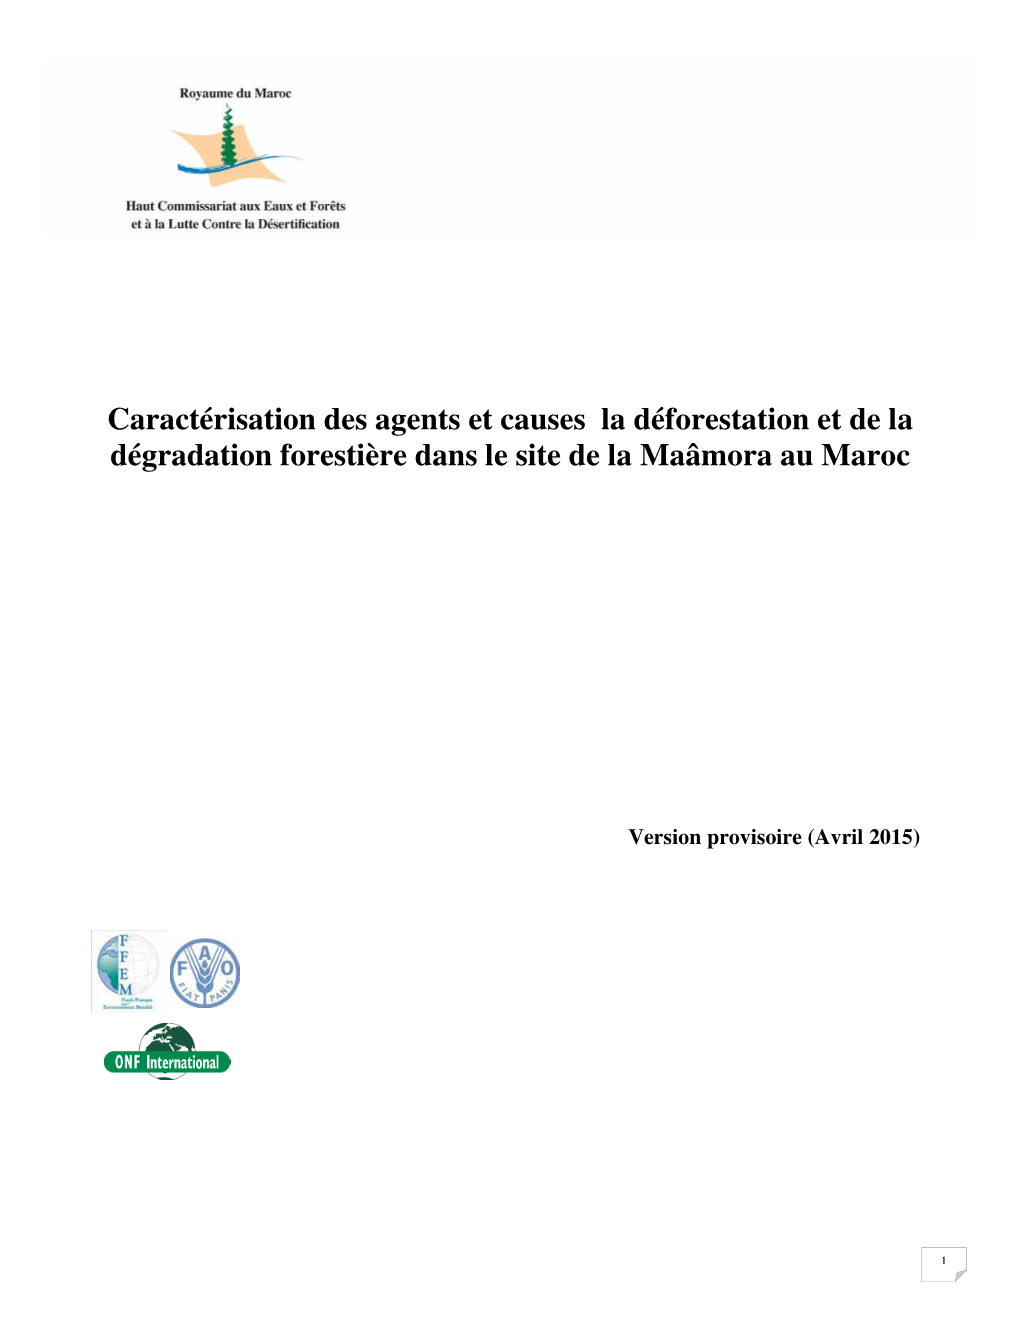 Caractérisation Des Agents Et Causes La Déforestation Et De La Dégradation Forestière Dans Le Site De La Maâmora Au Maroc